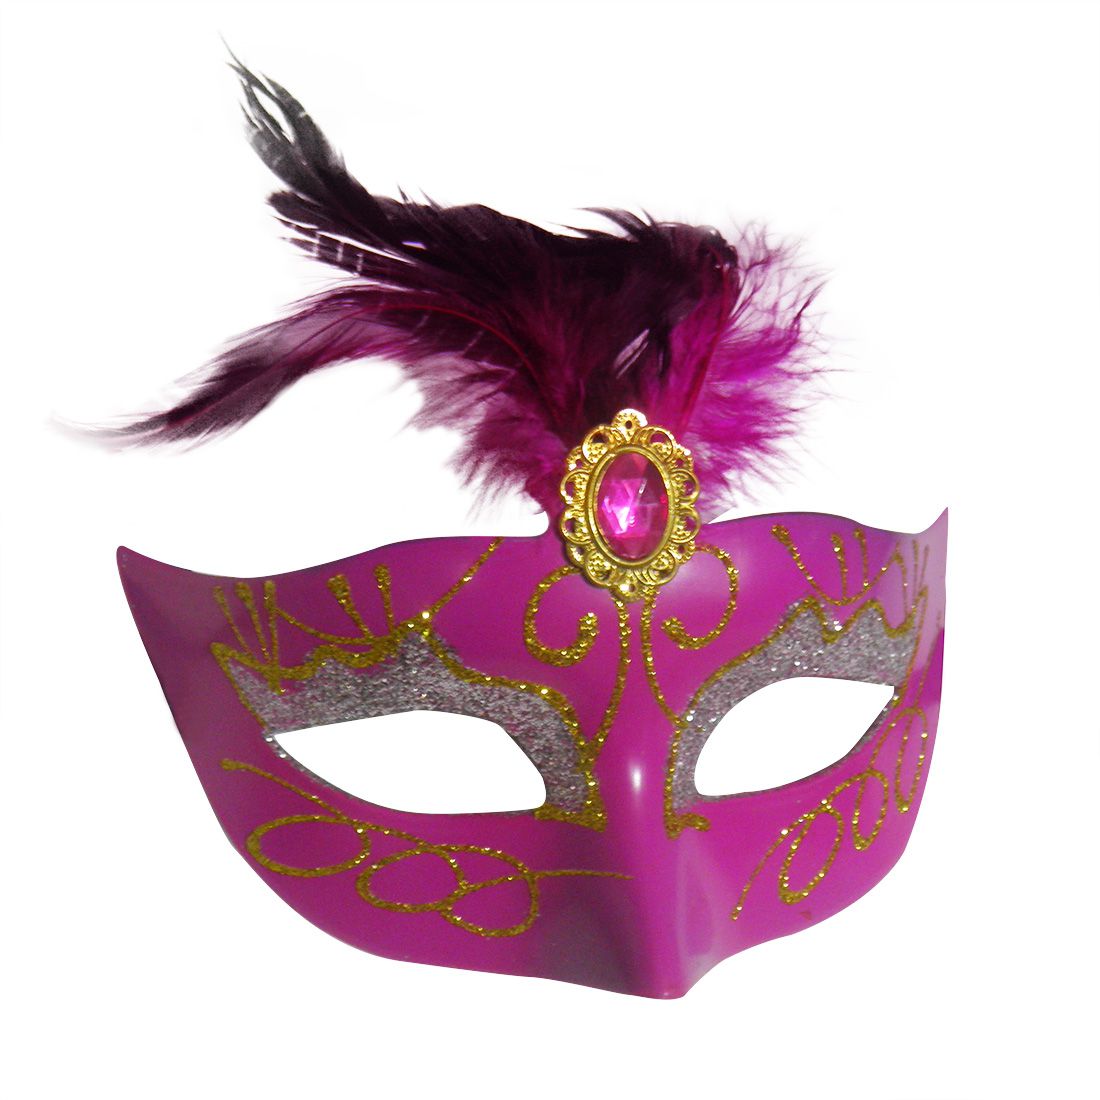 Mascara Fantasia Carnaval kit com 6 unidades Rosa Festa Eventos Baile